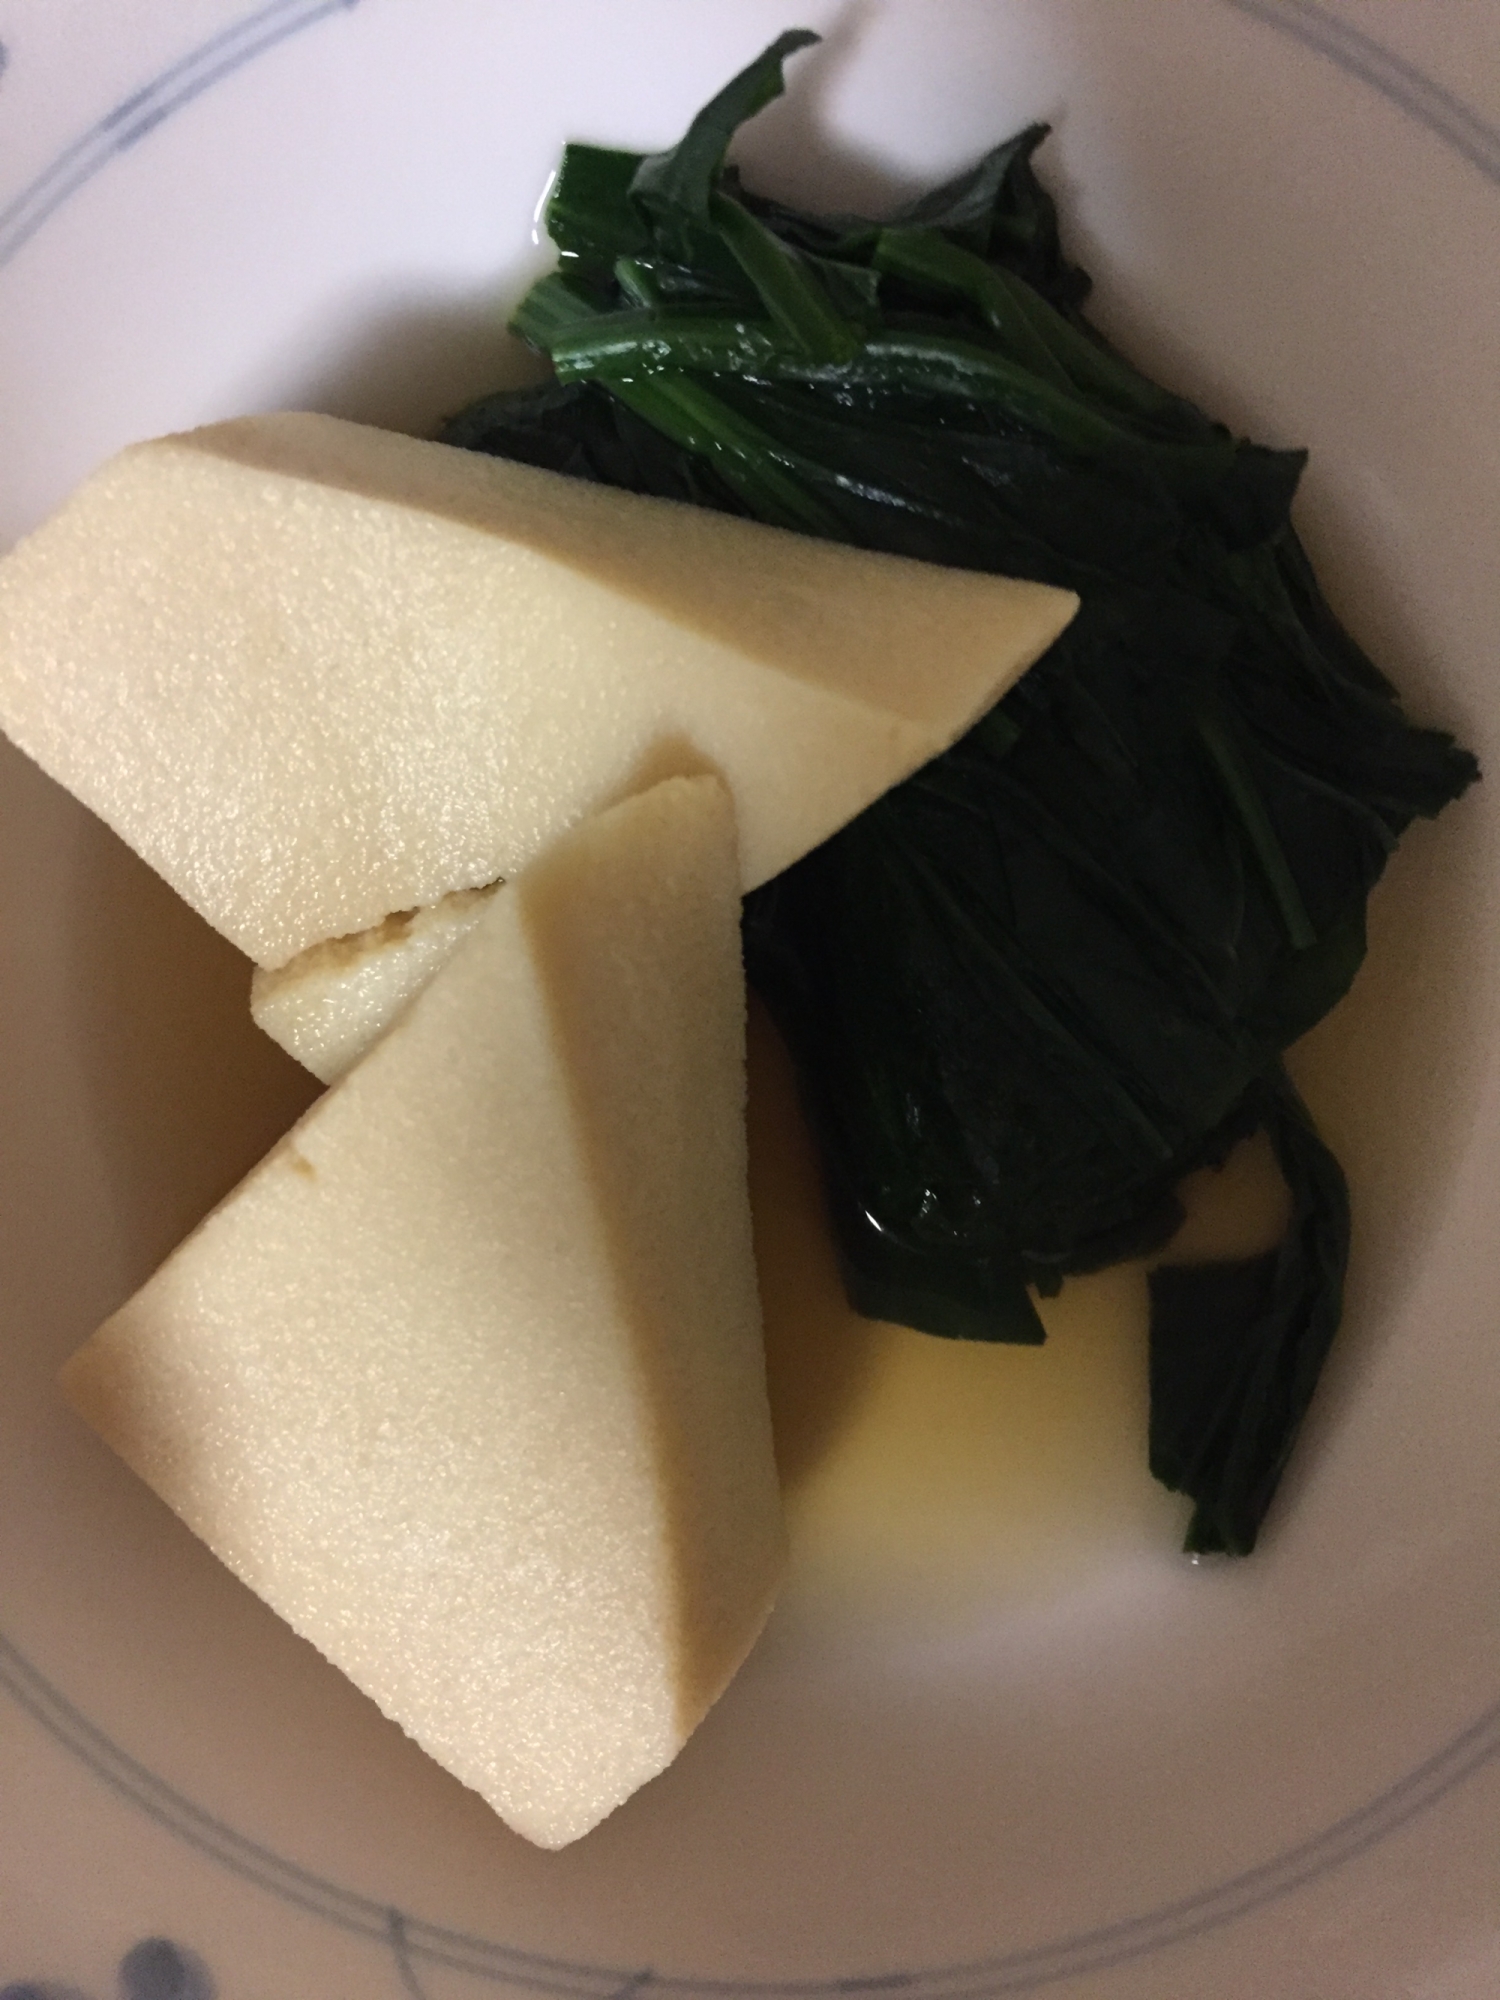 高野豆腐とほうれん草の煮物